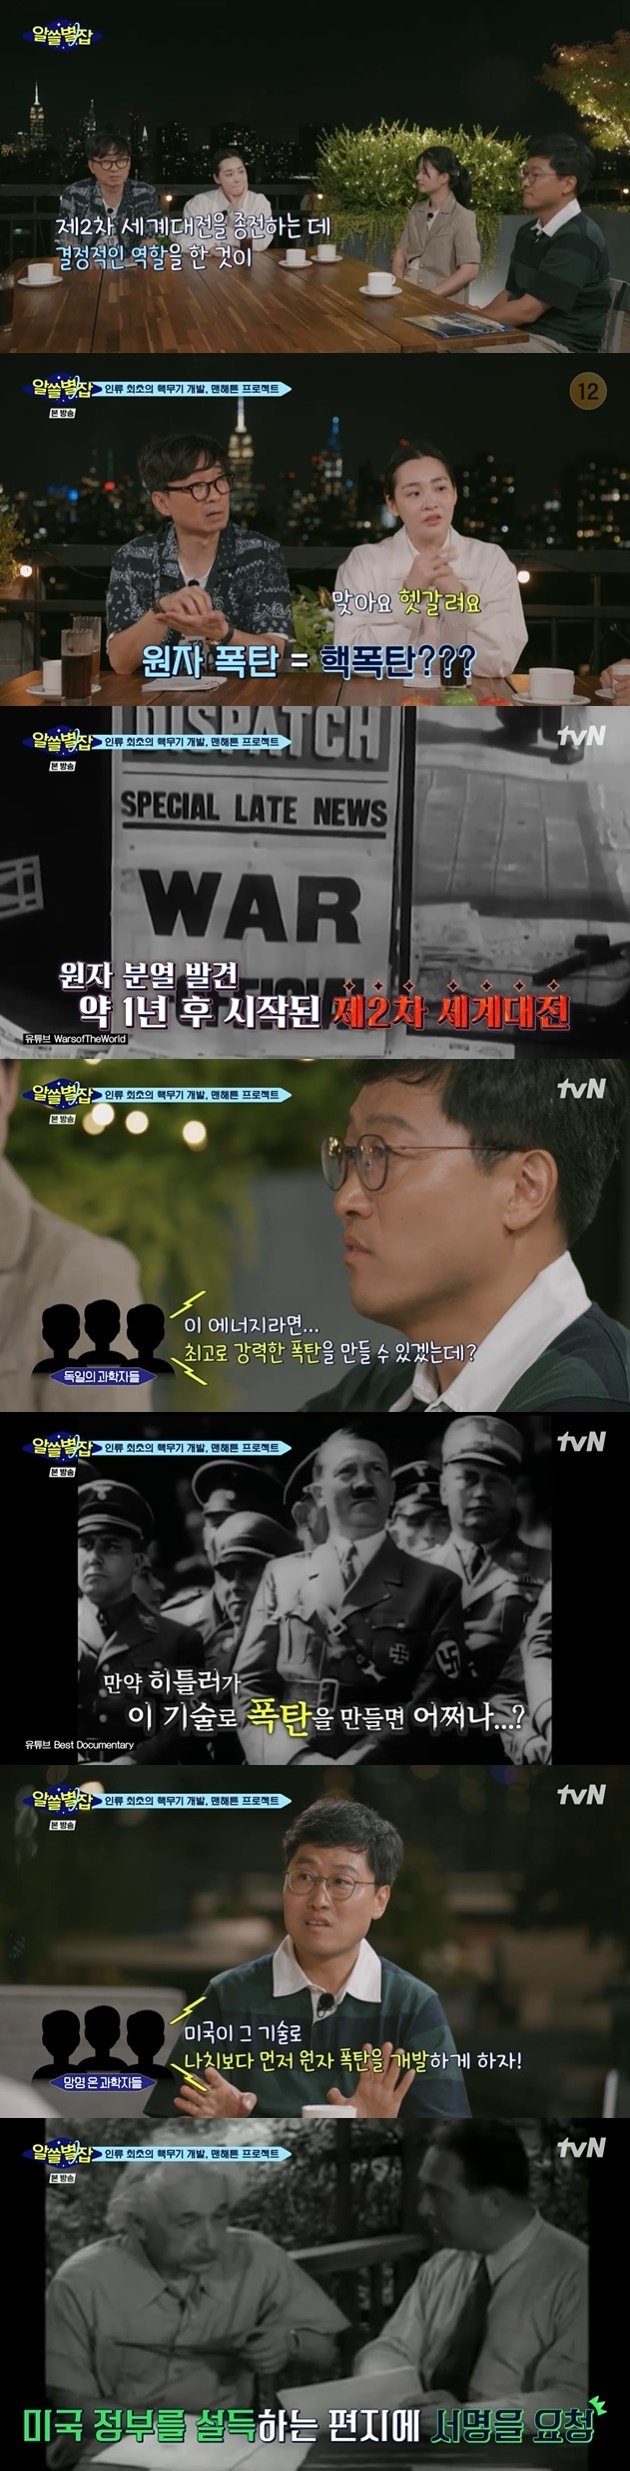 tvN '알쓸별잡' 캡처